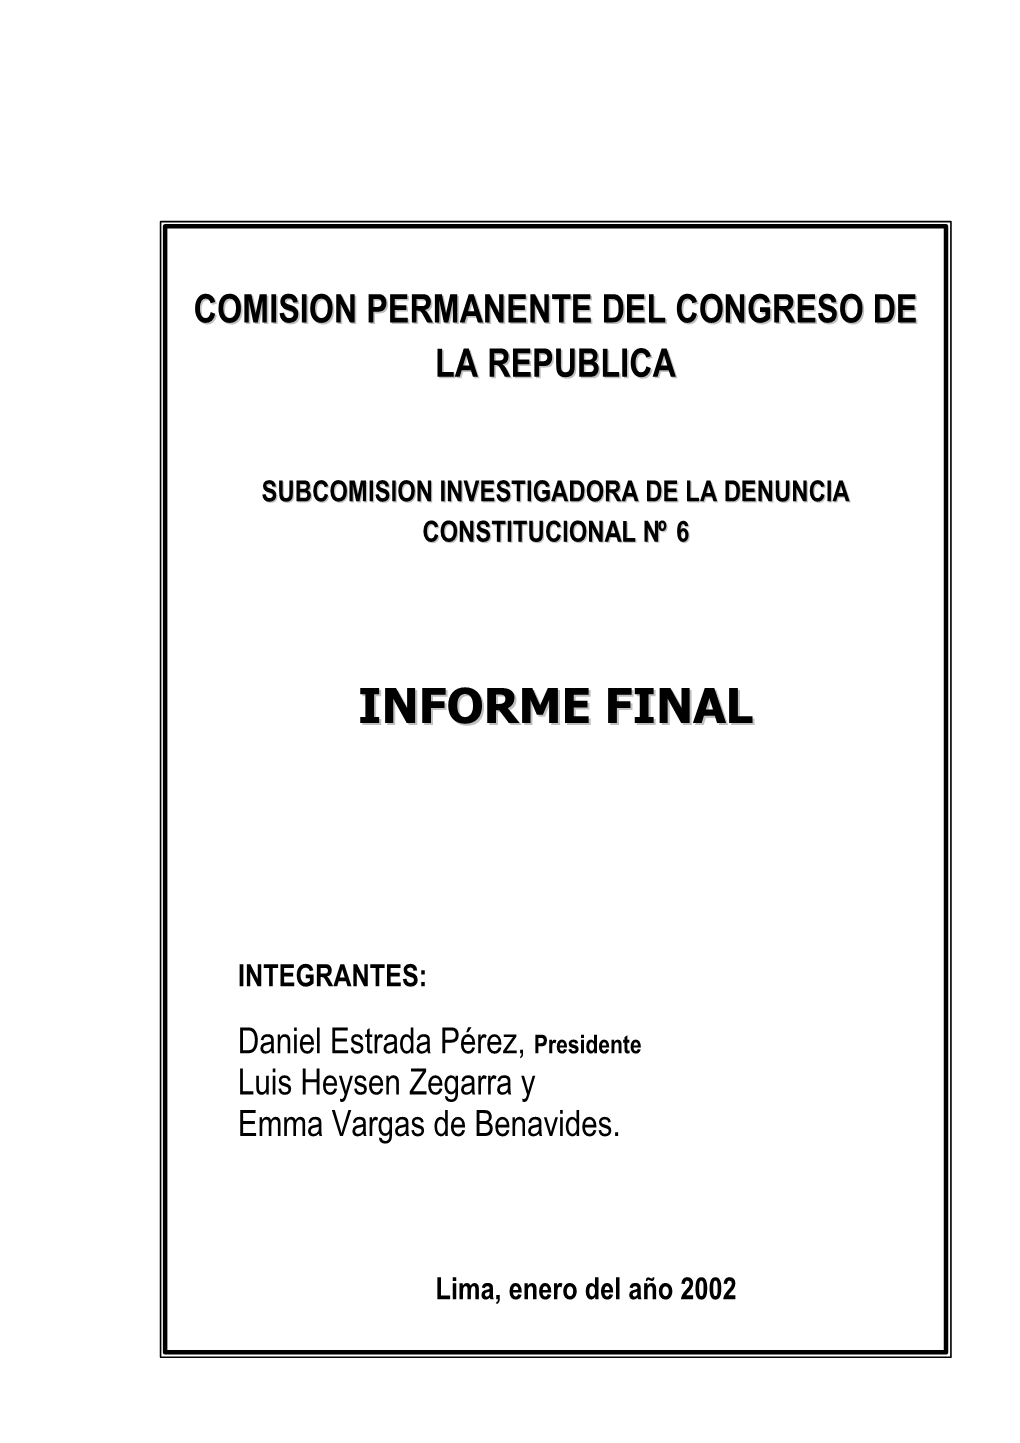 Informe Final De La Subcomisión Investigadora De La Denuncia Constitucional No